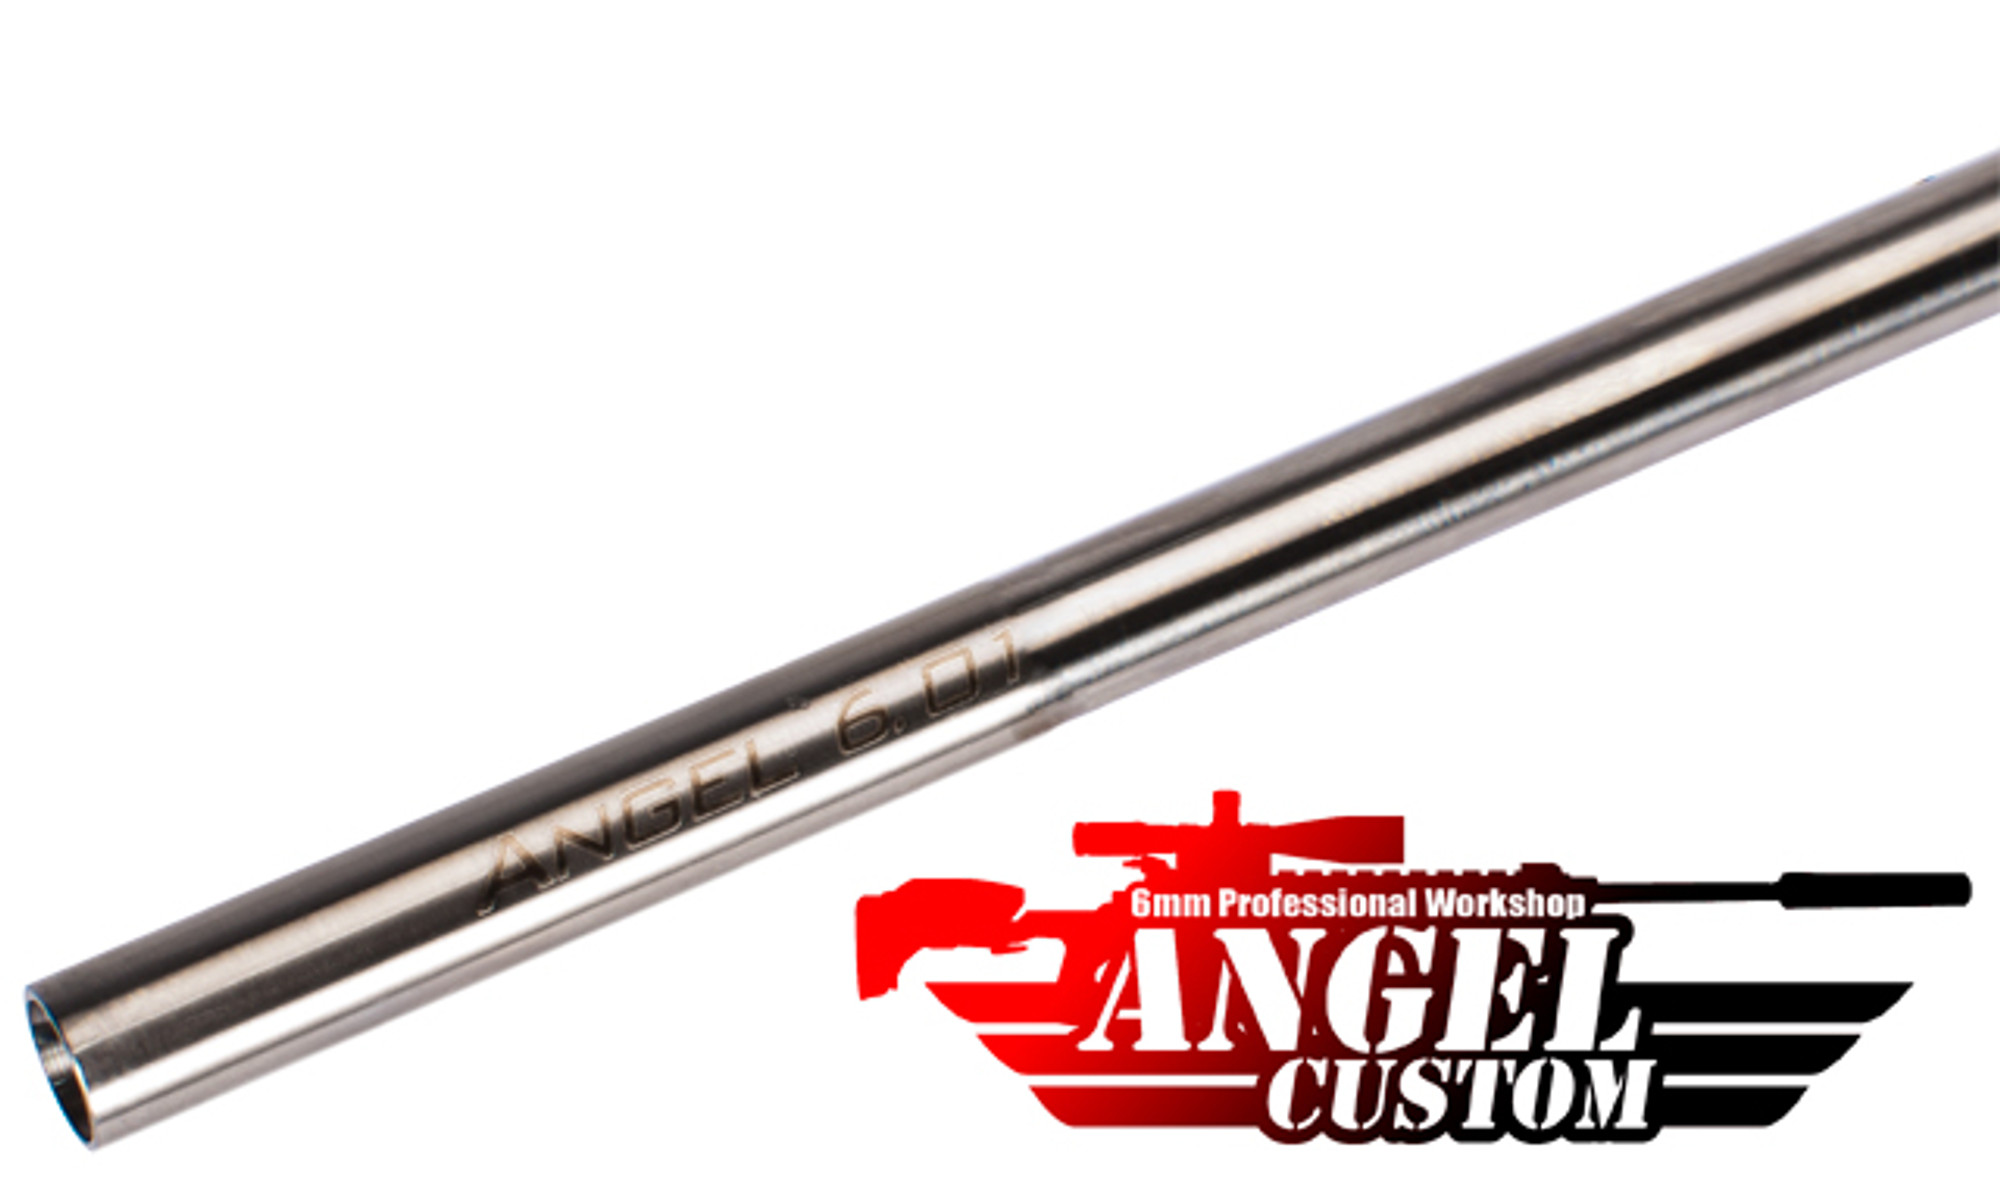 Angel Custom G2 SUS304 Stainless Steel 6.01mm GBB Tightbore Inner Barrel (97mm / WE NG3 Series)